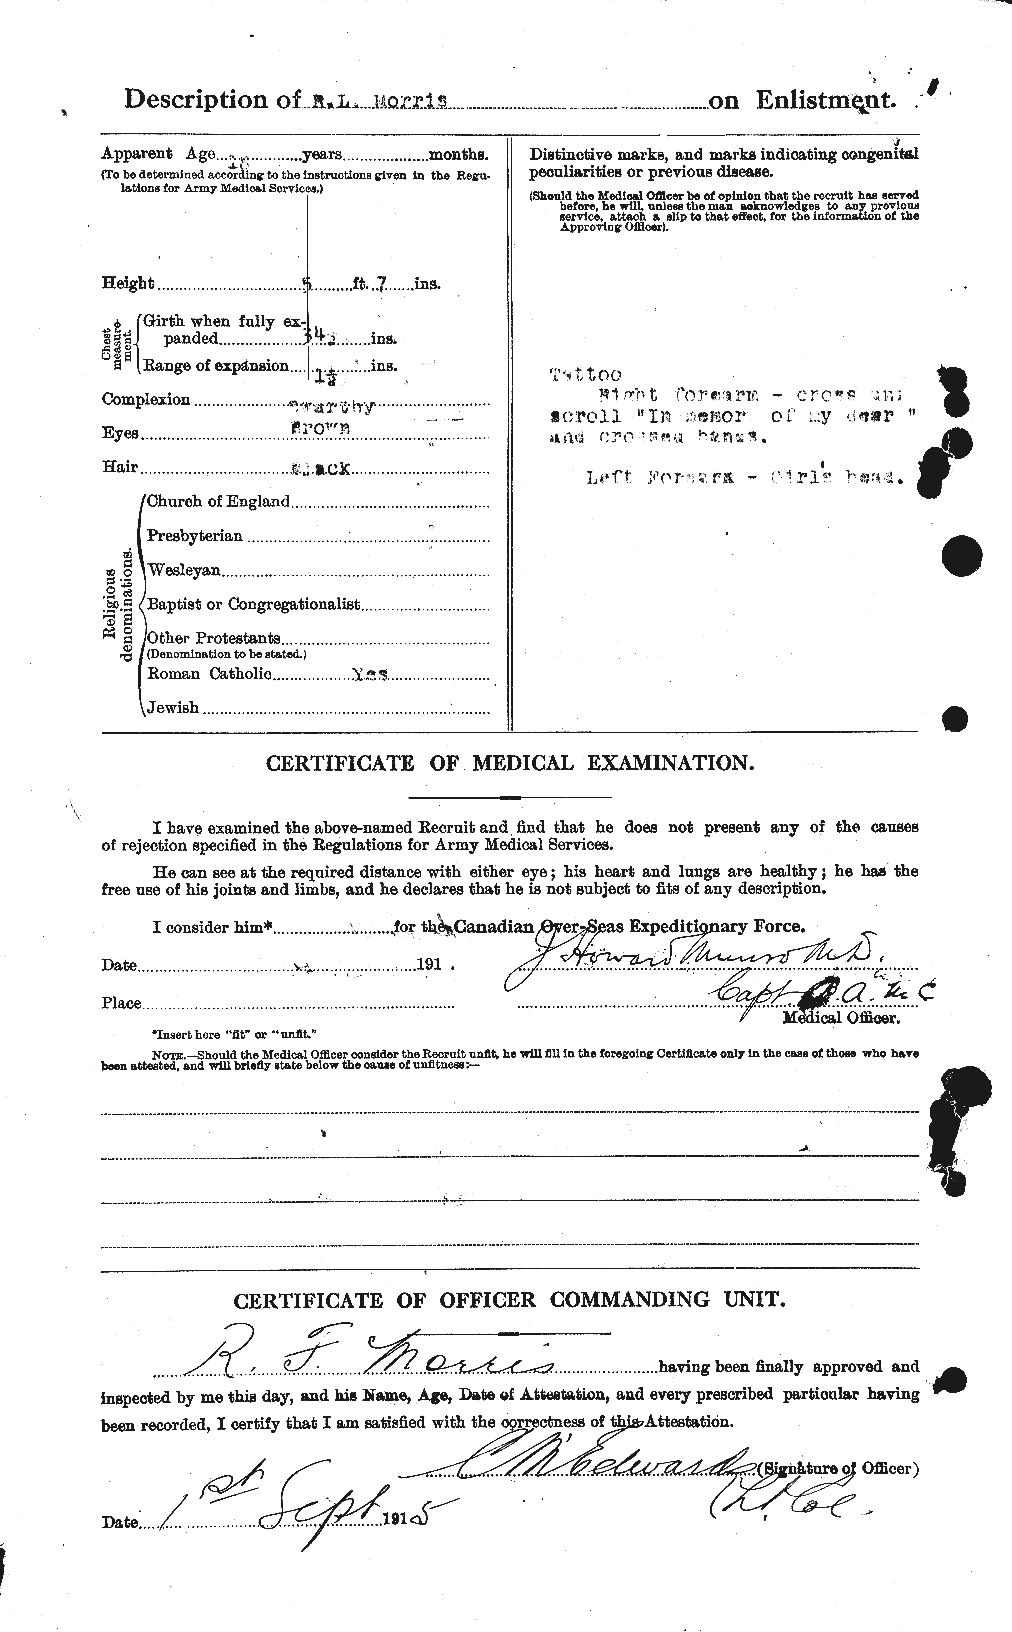 Dossiers du Personnel de la Première Guerre mondiale - CEC 508628b